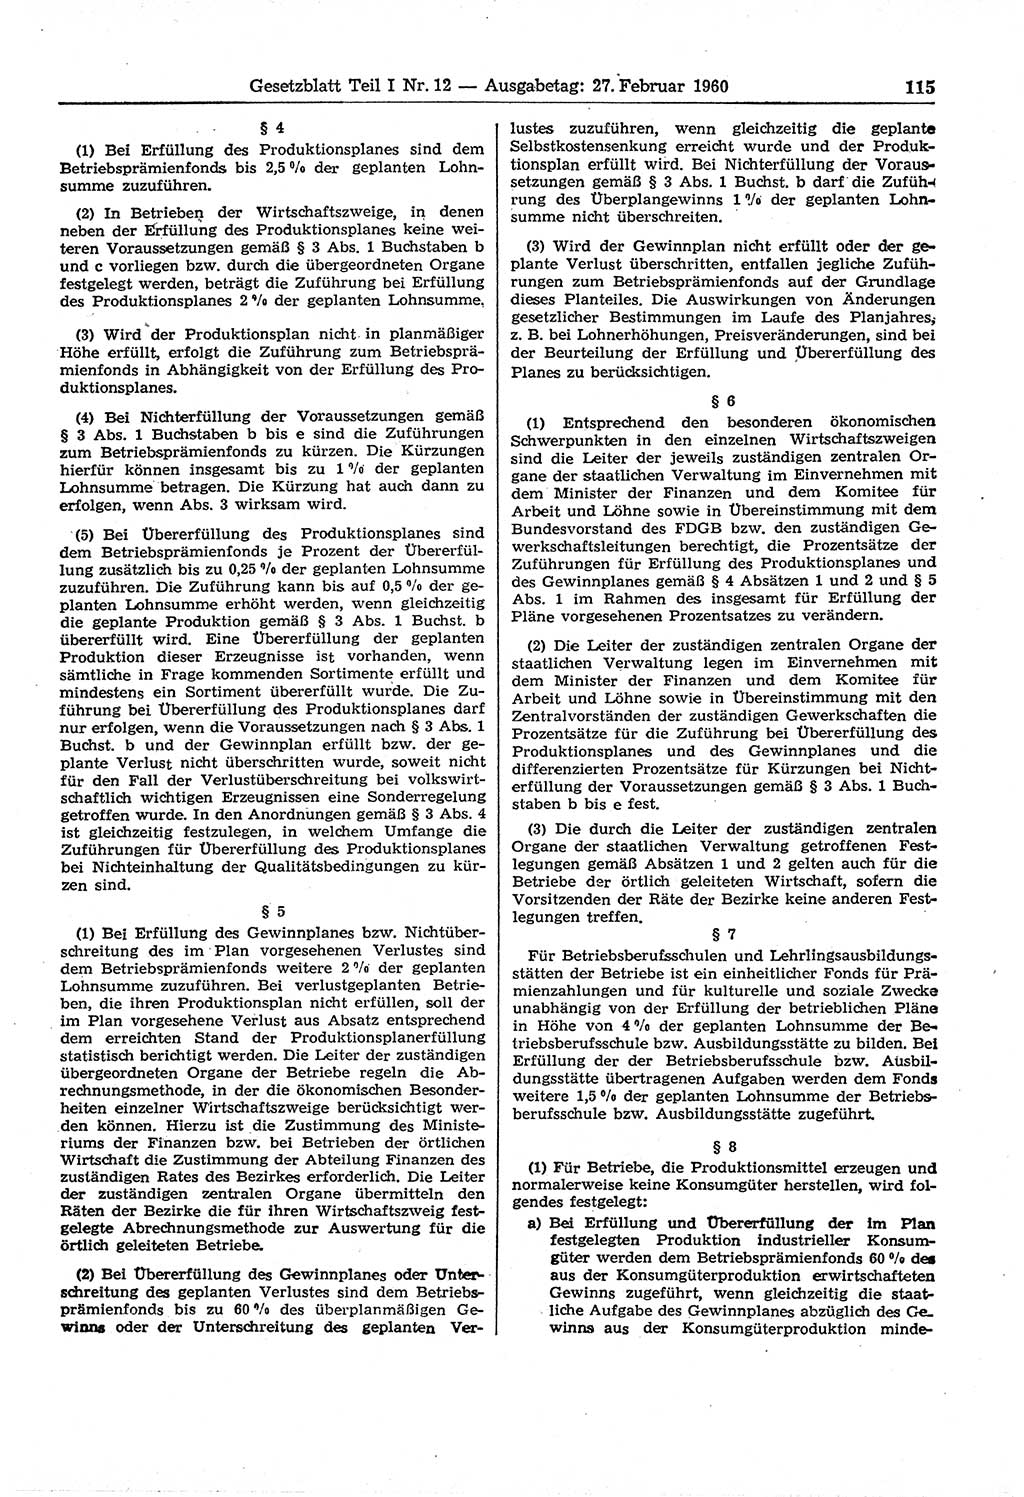 Gesetzblatt (GBl.) der Deutschen Demokratischen Republik (DDR) Teil Ⅰ 1960, Seite 115 (GBl. DDR Ⅰ 1960, S. 115)